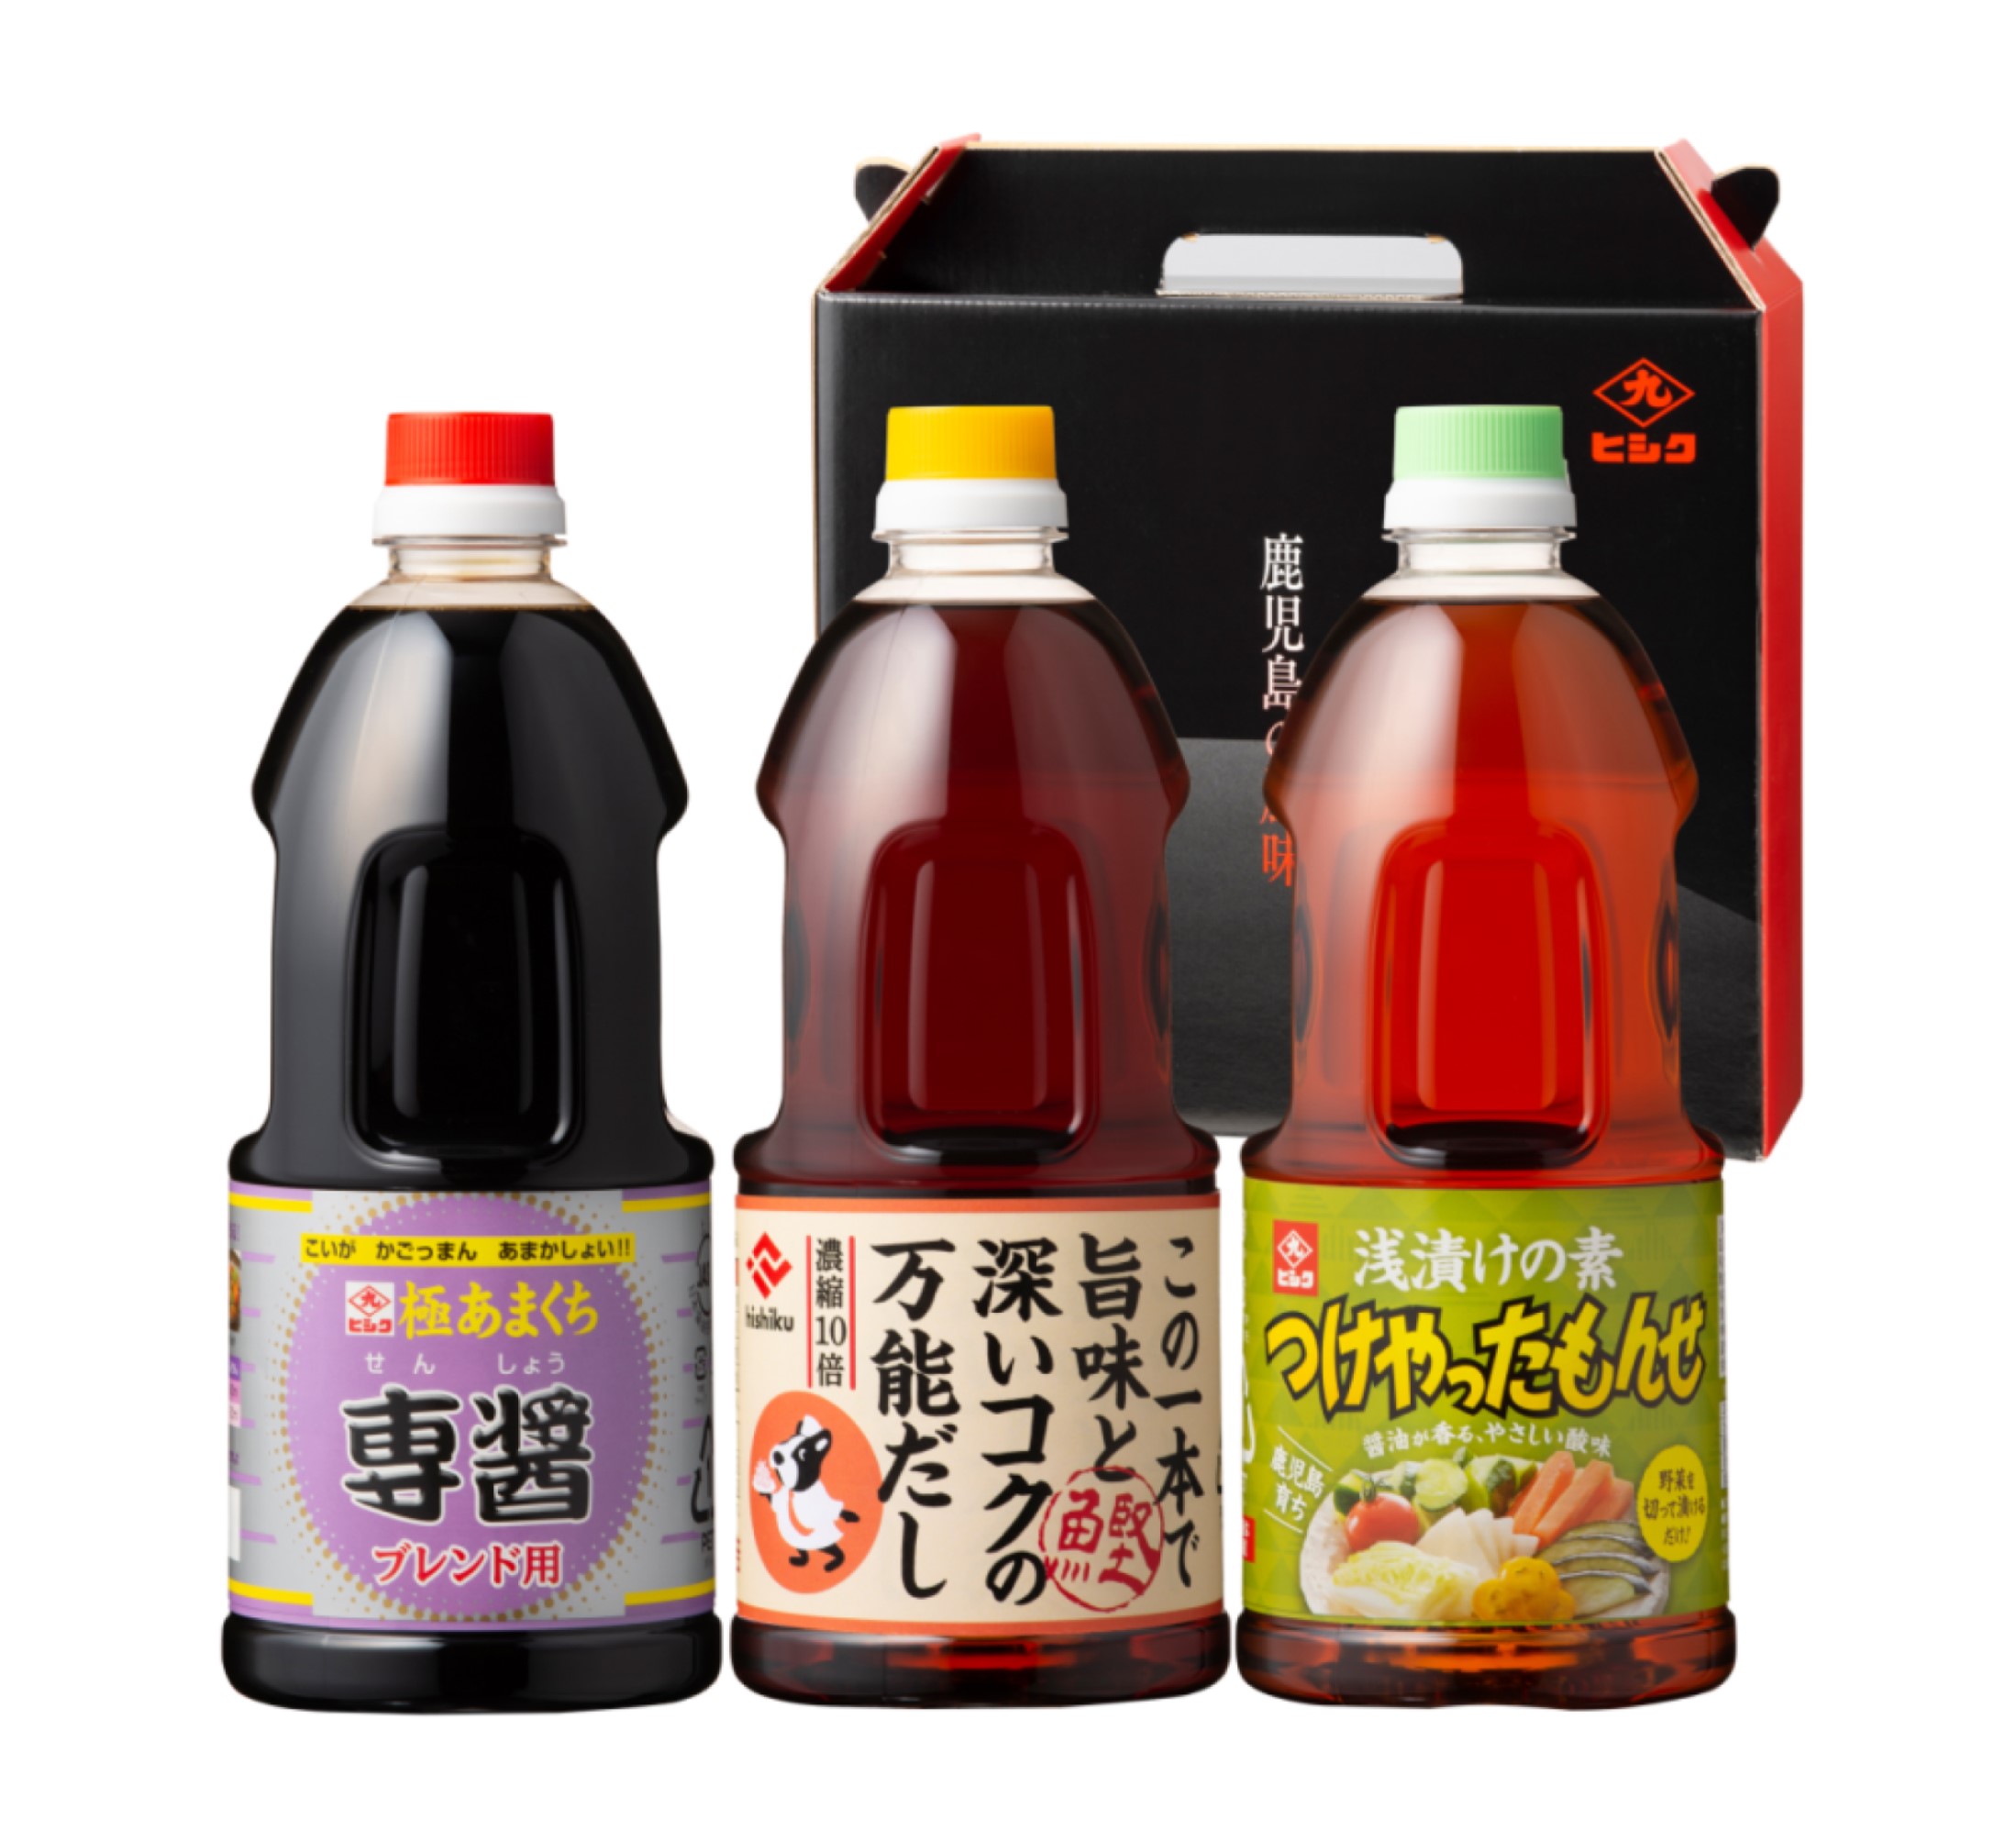 ギフト商品の紹介 | 鹿児島甘口味噌醤油ヒシク藤安醸造公式サイト